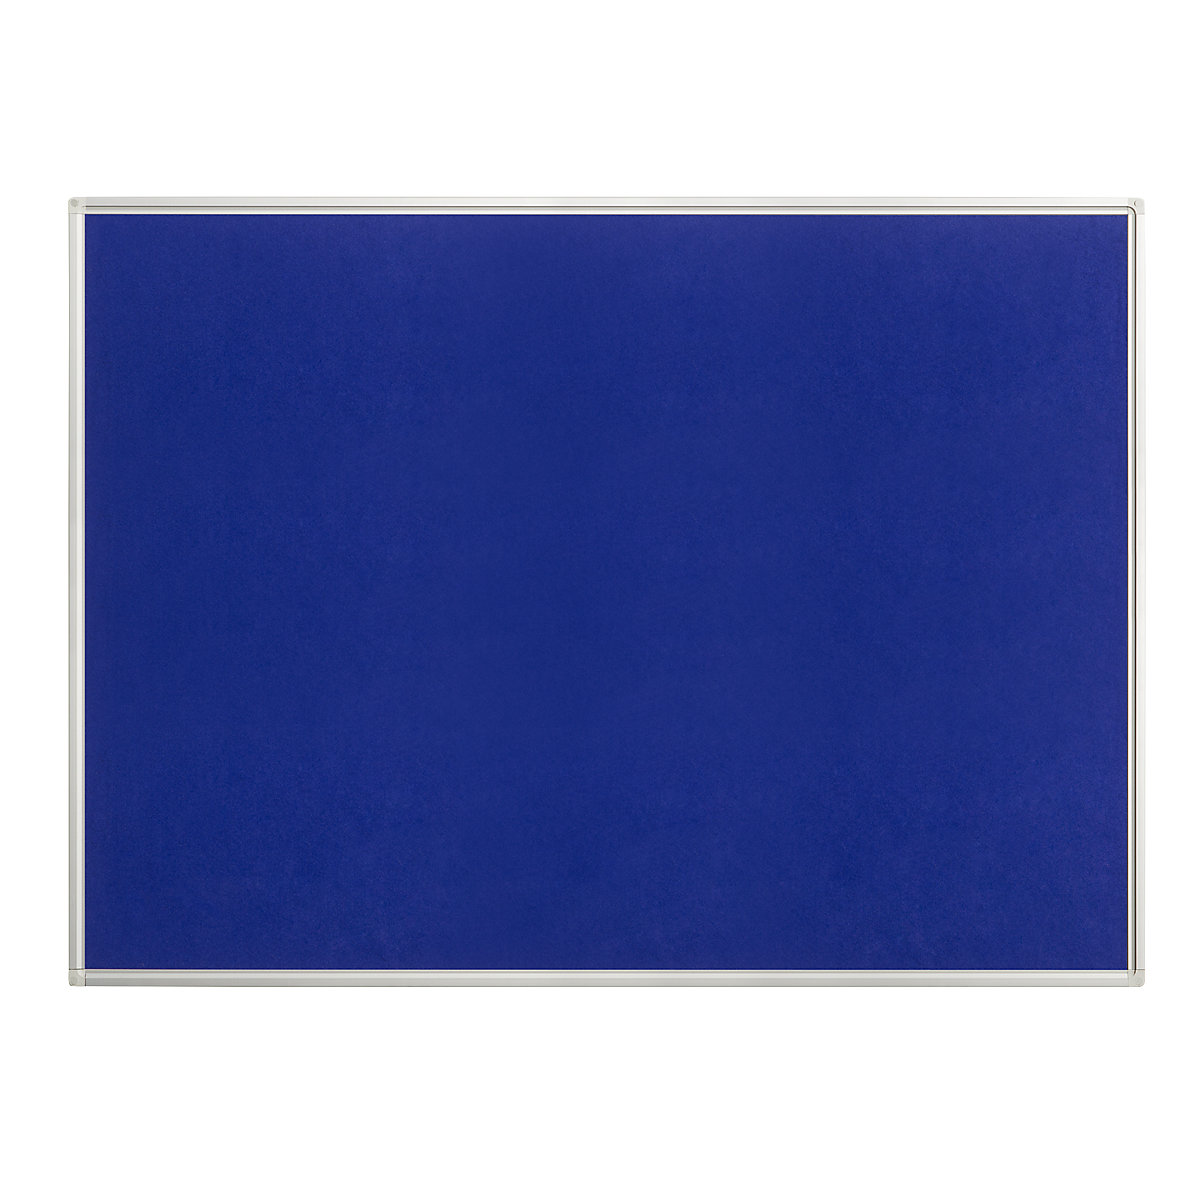 Tableau pour épingles, feutre, bleu, l x h 1200 x 900 mm-5